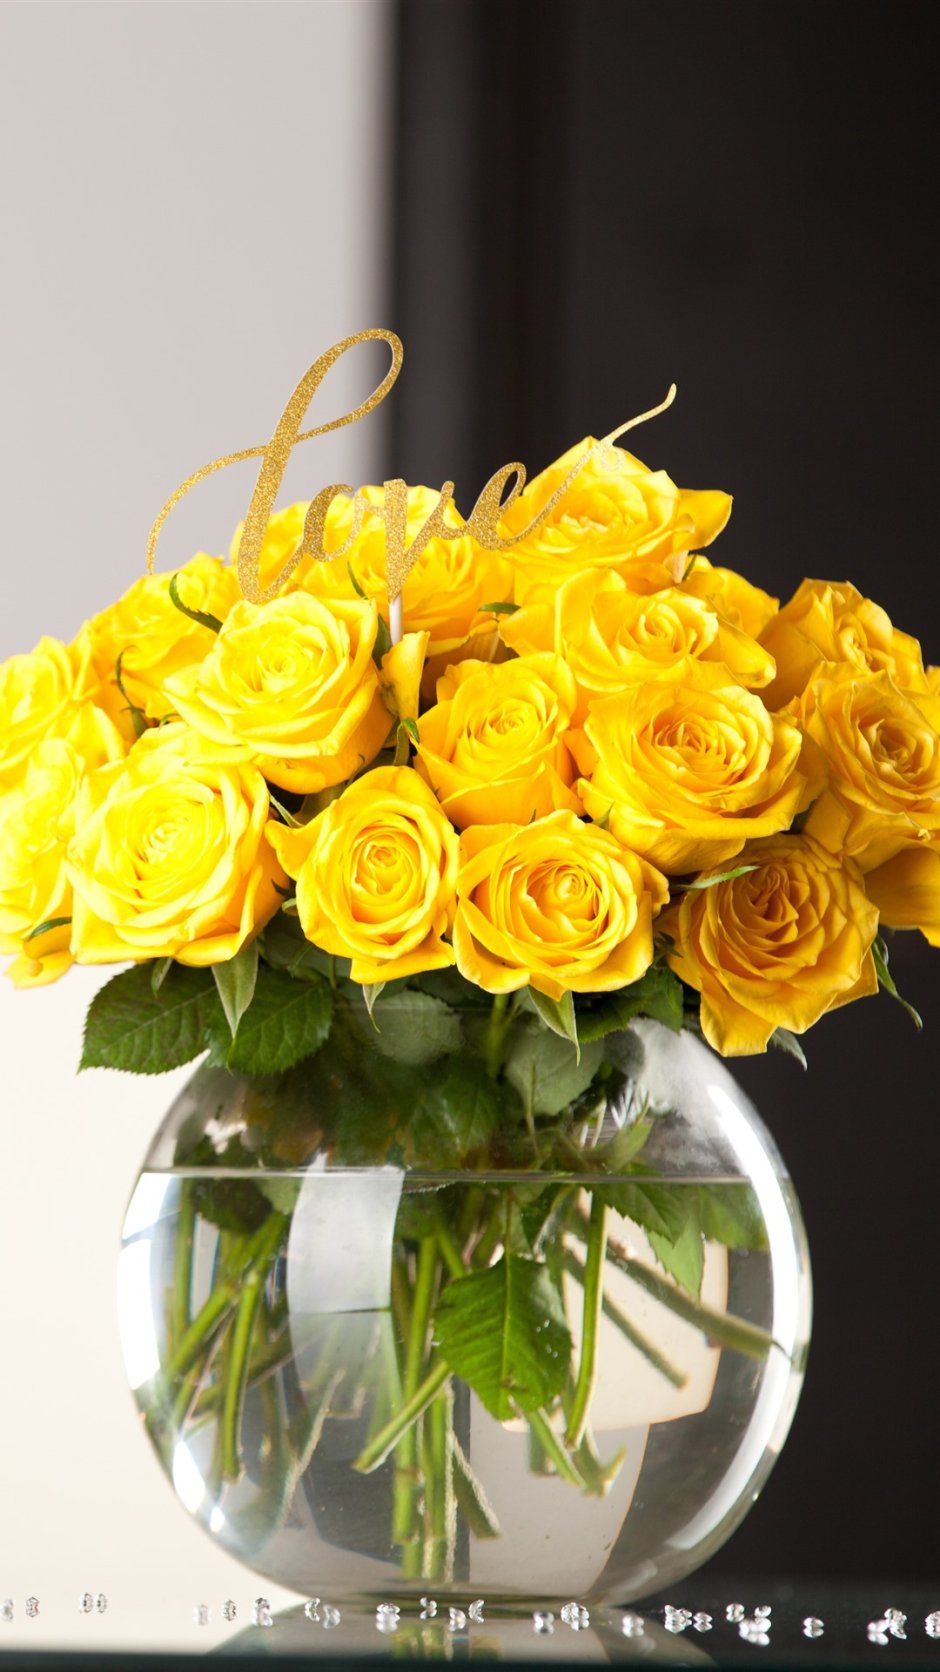 С днем рождения женщине желтые розы